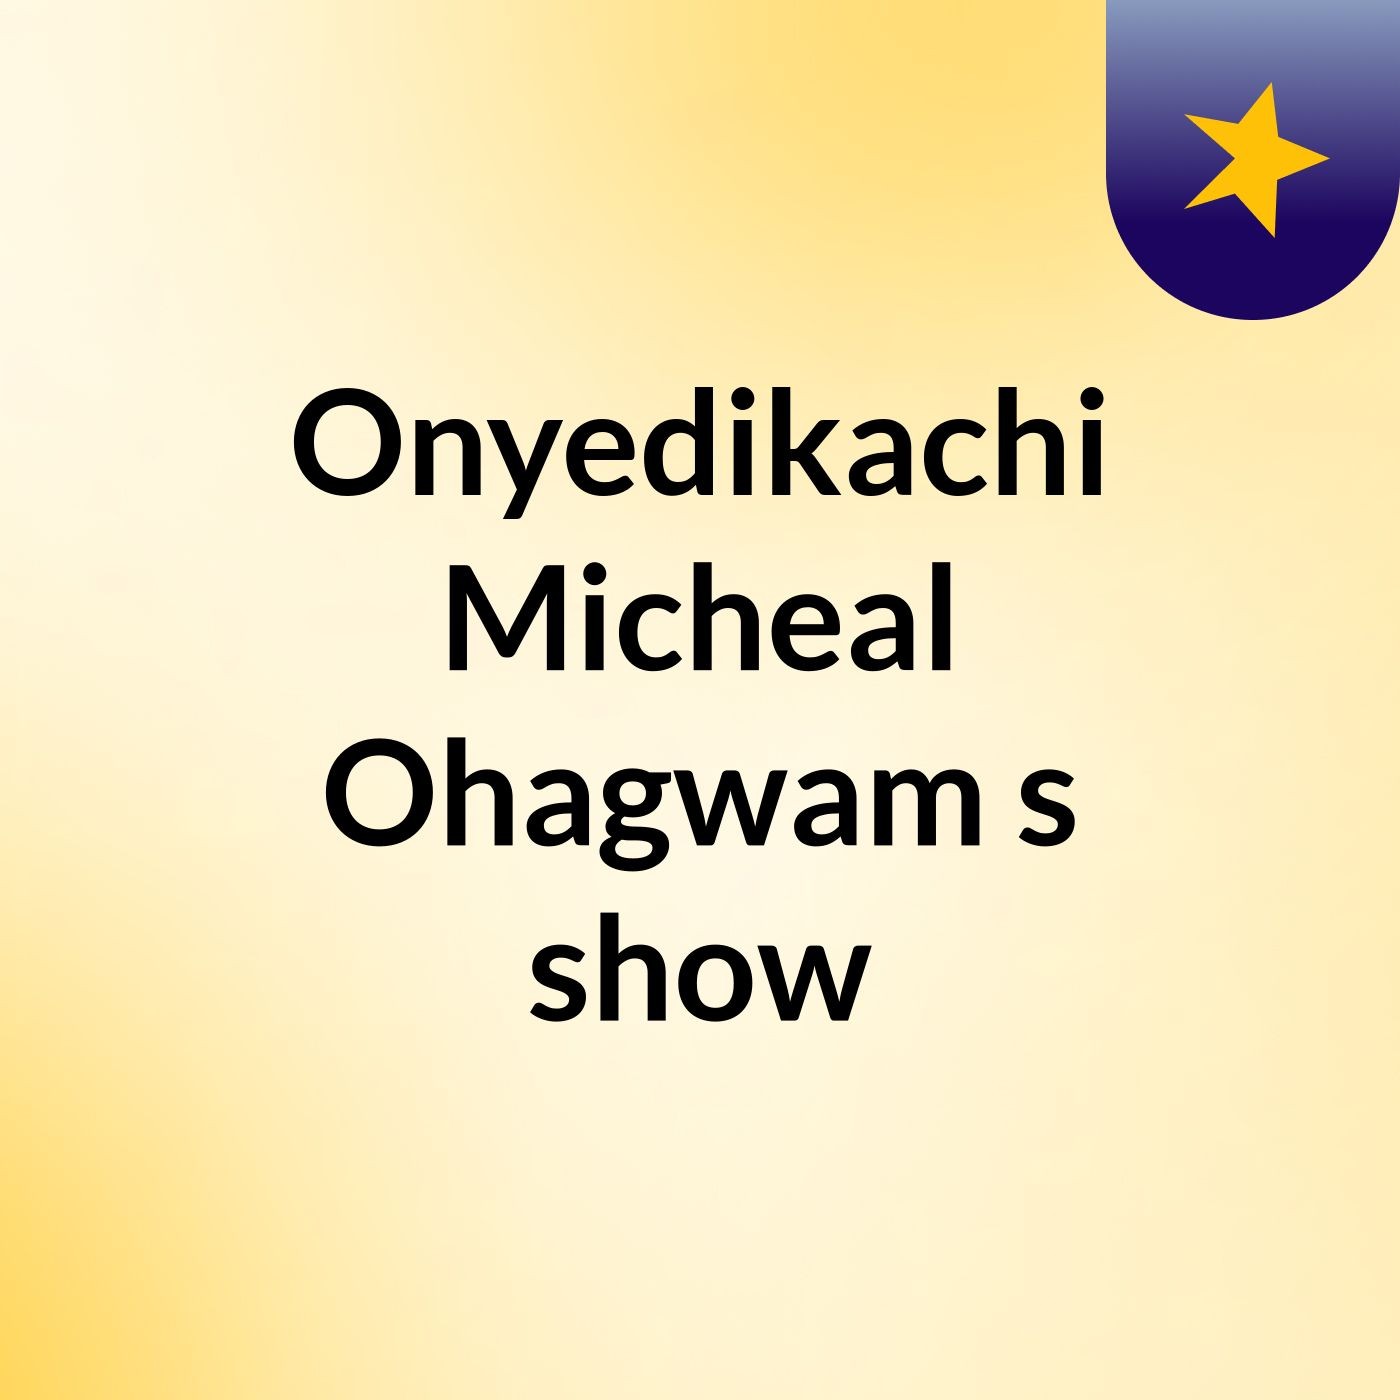 Episode 2 - Onyedikachi Micheal Ohagwam's show